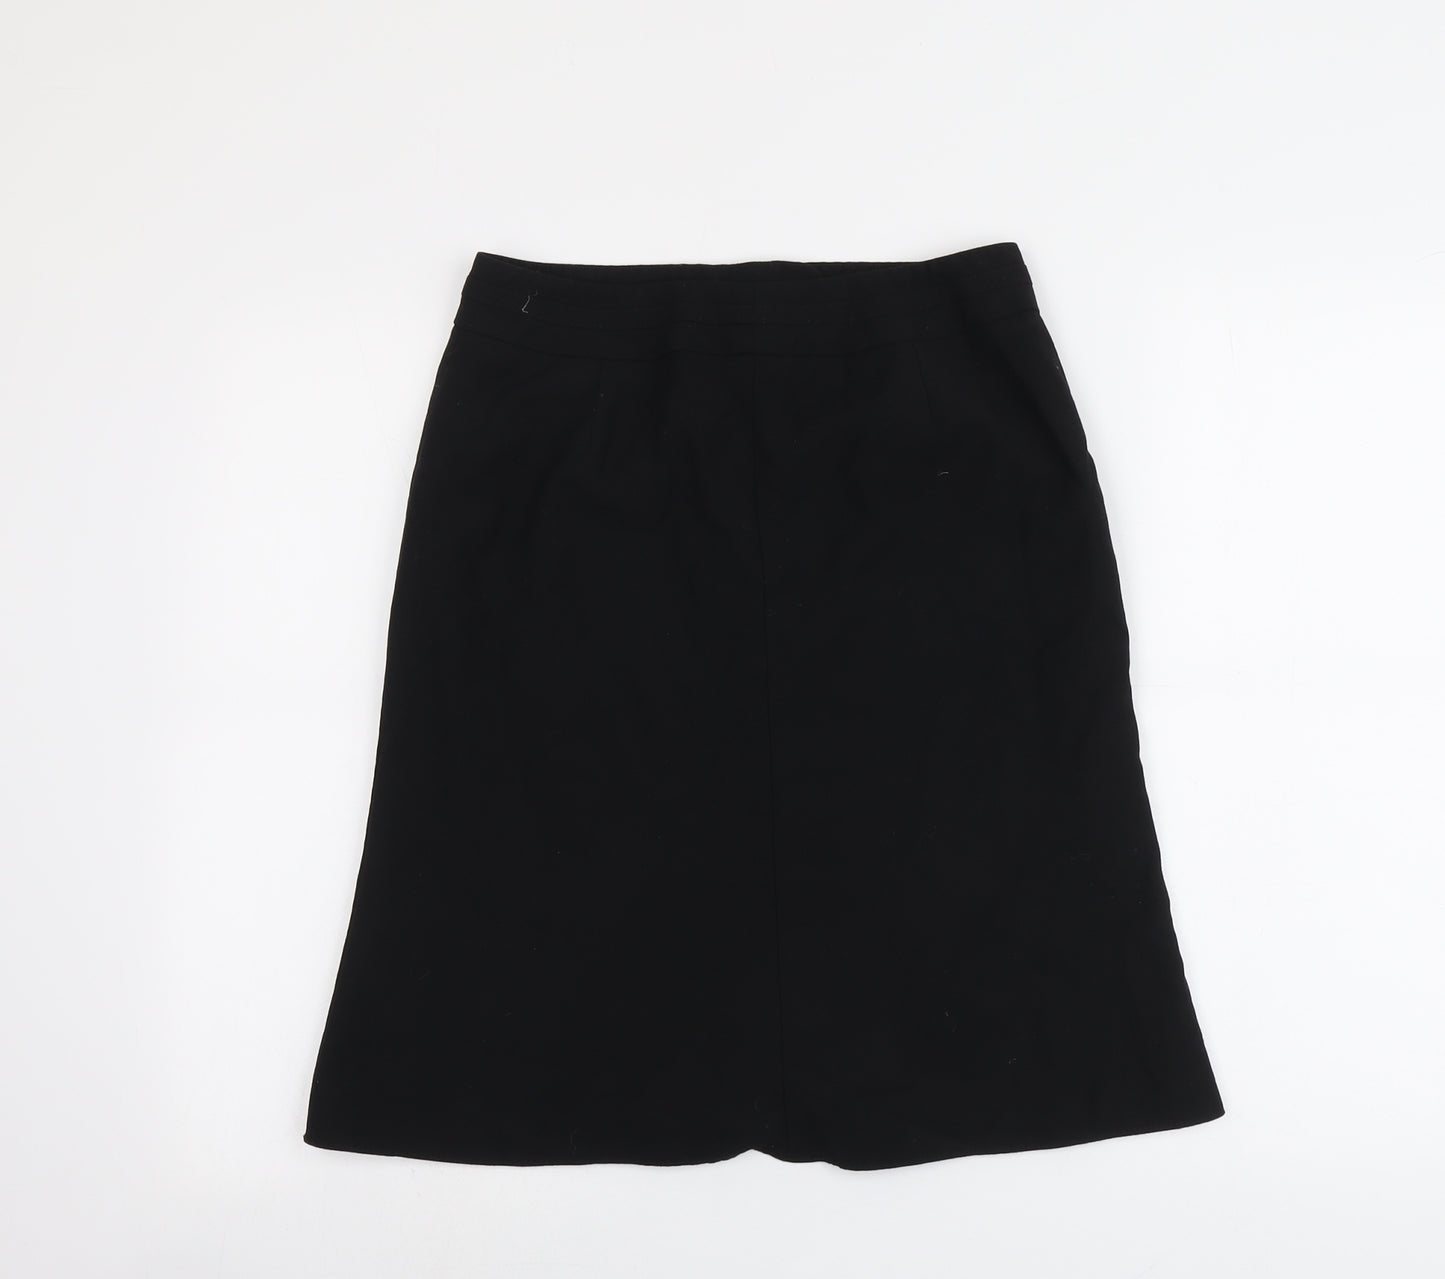 NEXT Womens Black Viscose A-Line Skirt Size 10 Zip